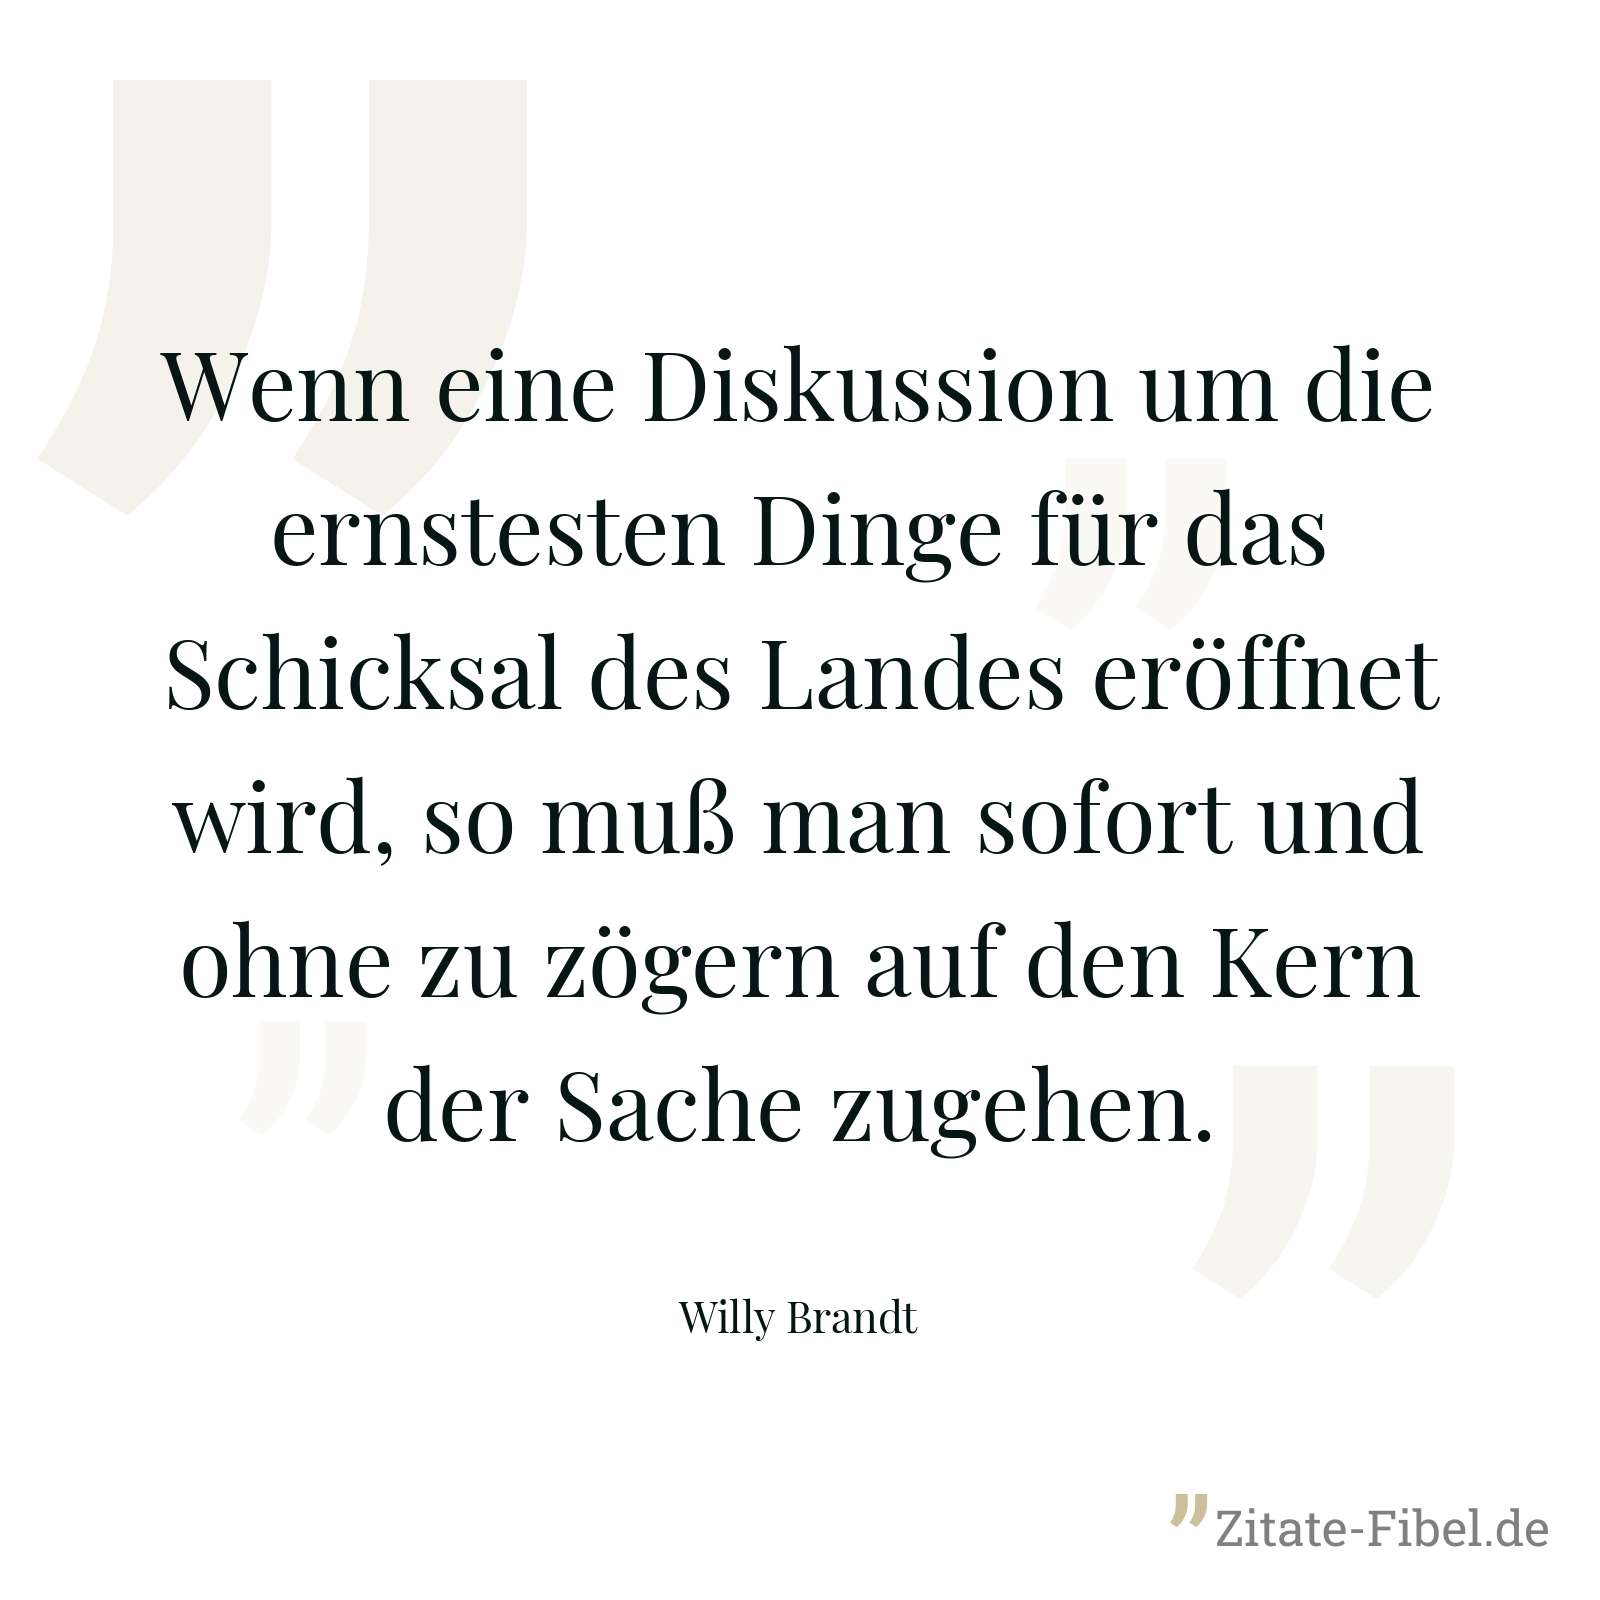 Wenn eine Diskussion um die ernstesten Dinge für das Schicksal des Landes eröffnet wird, so muß man sofort und ohne zu zögern auf den Kern der Sache zugehen. - Willy Brandt